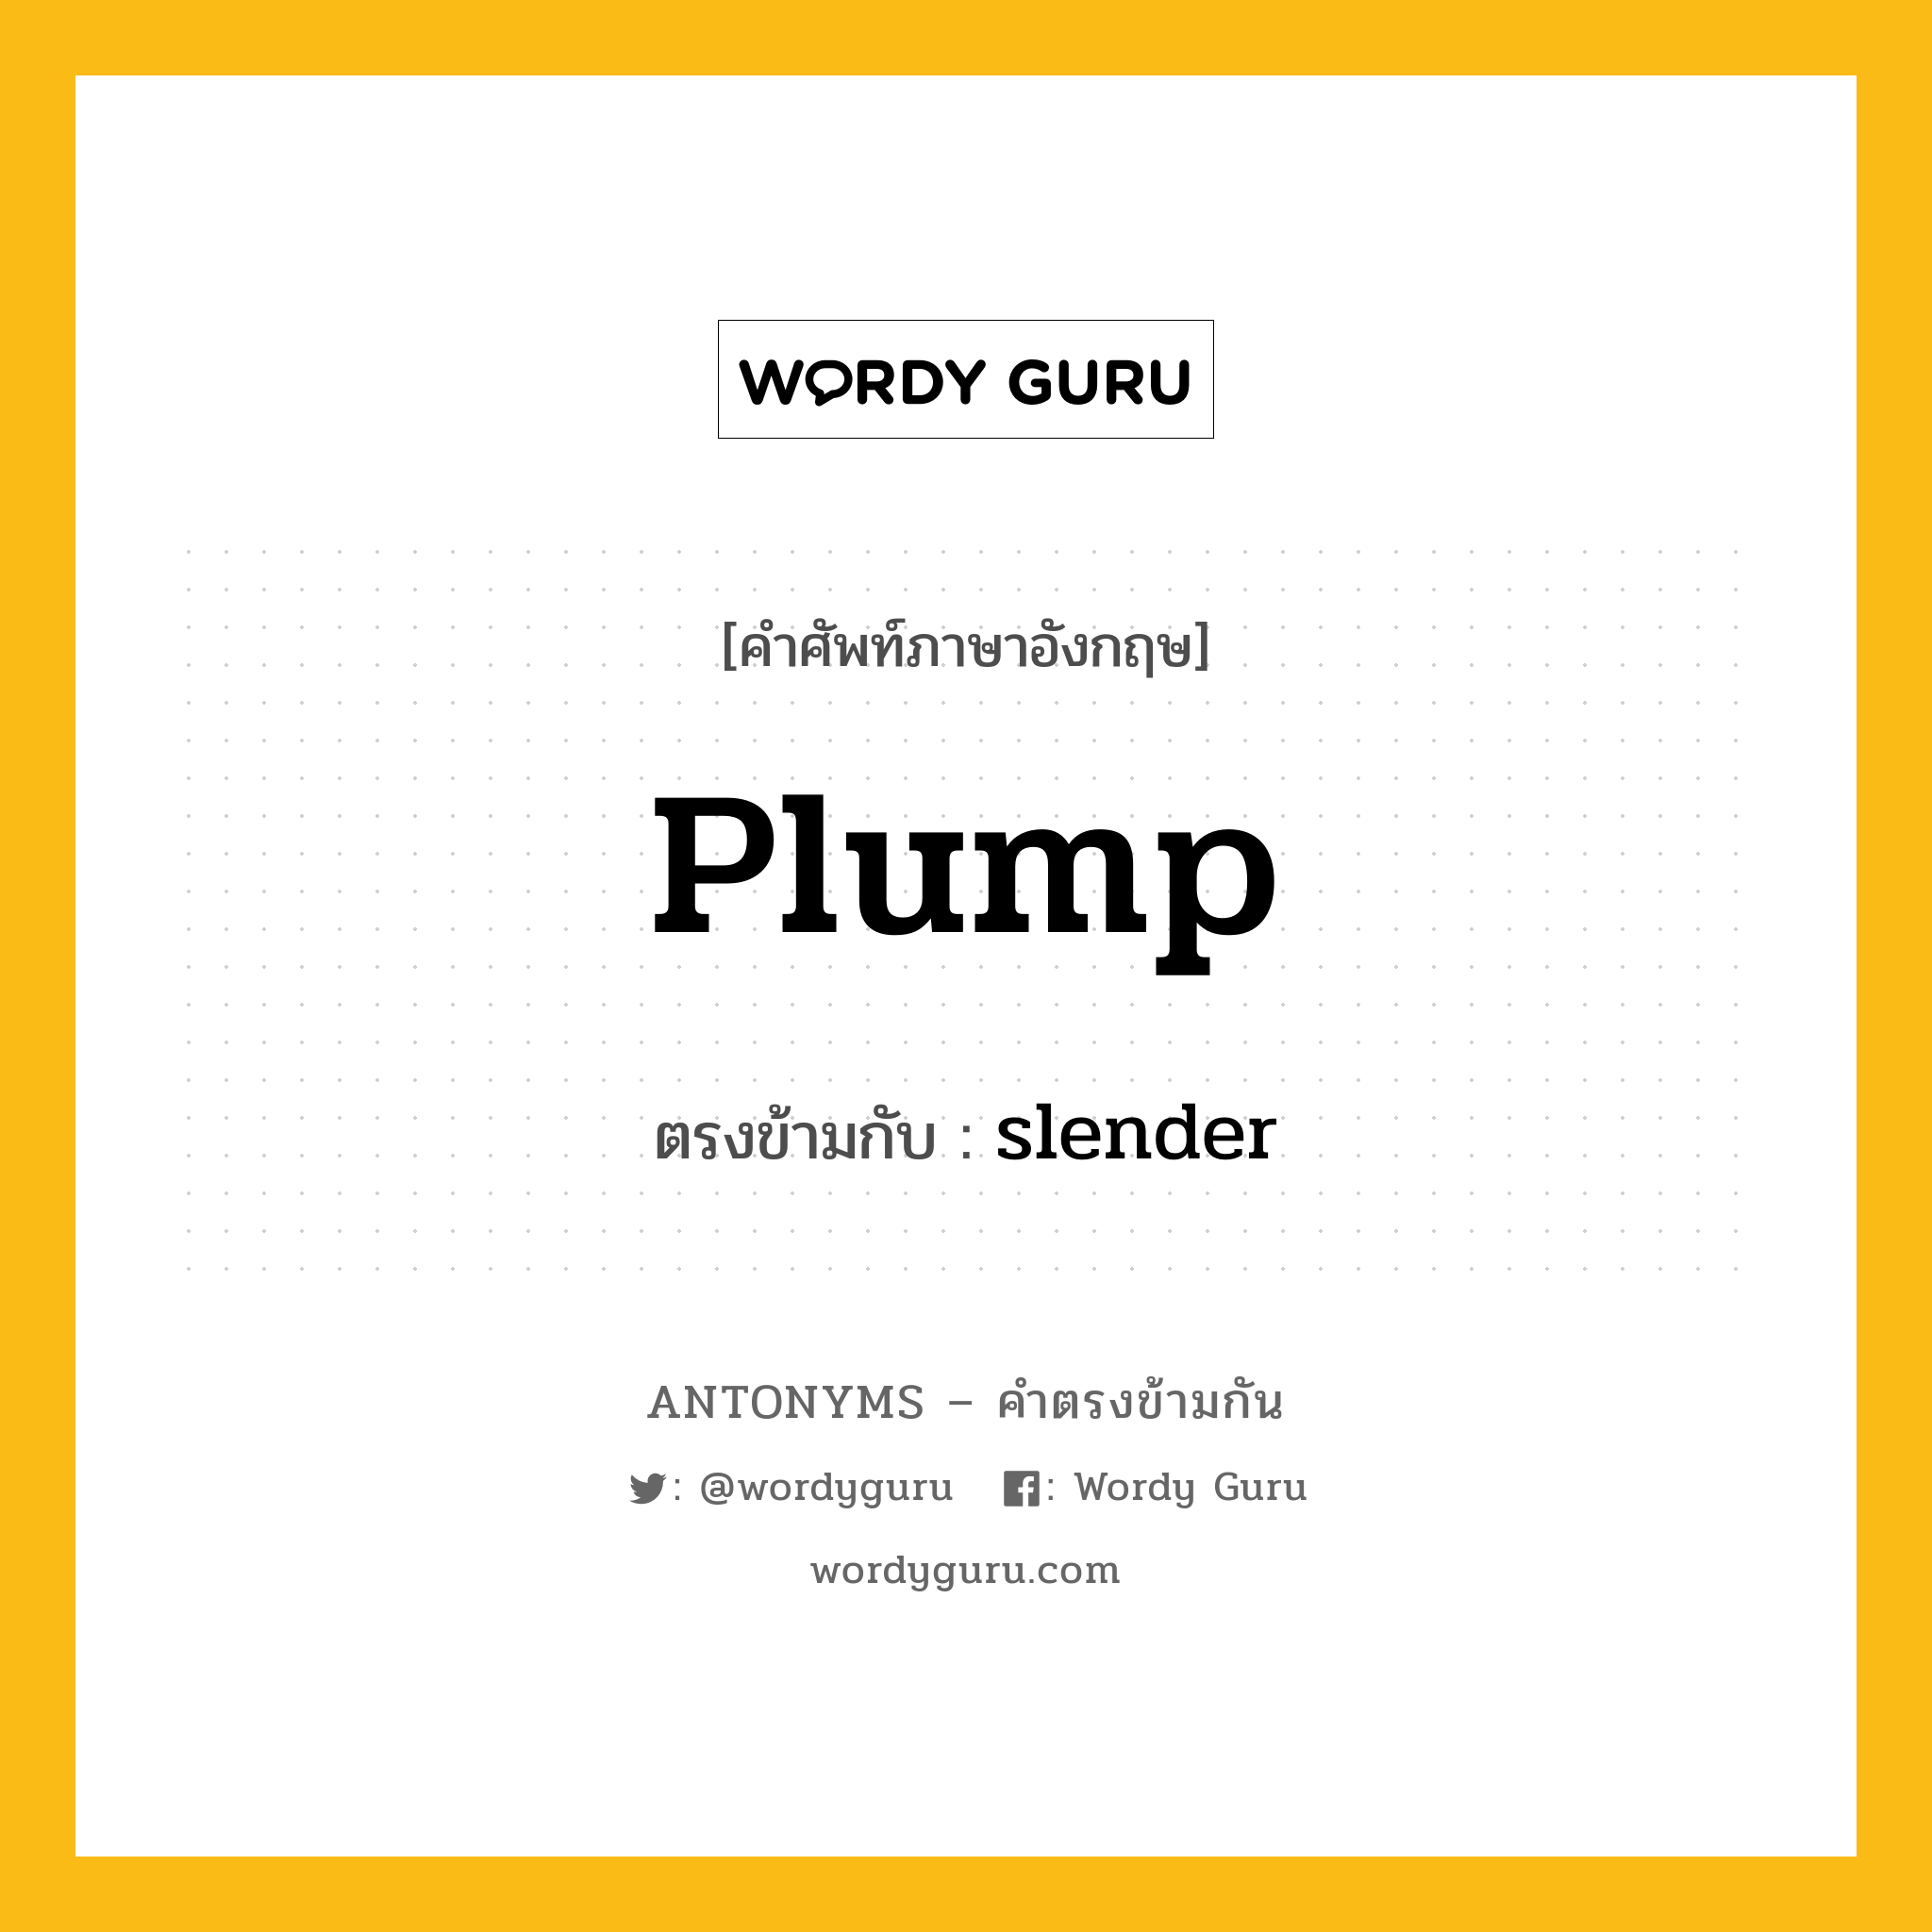 plump เป็นคำตรงข้ามกับคำไหนบ้าง?, คำศัพท์ภาษาอังกฤษ plump ตรงข้ามกับ slender หมวด slender